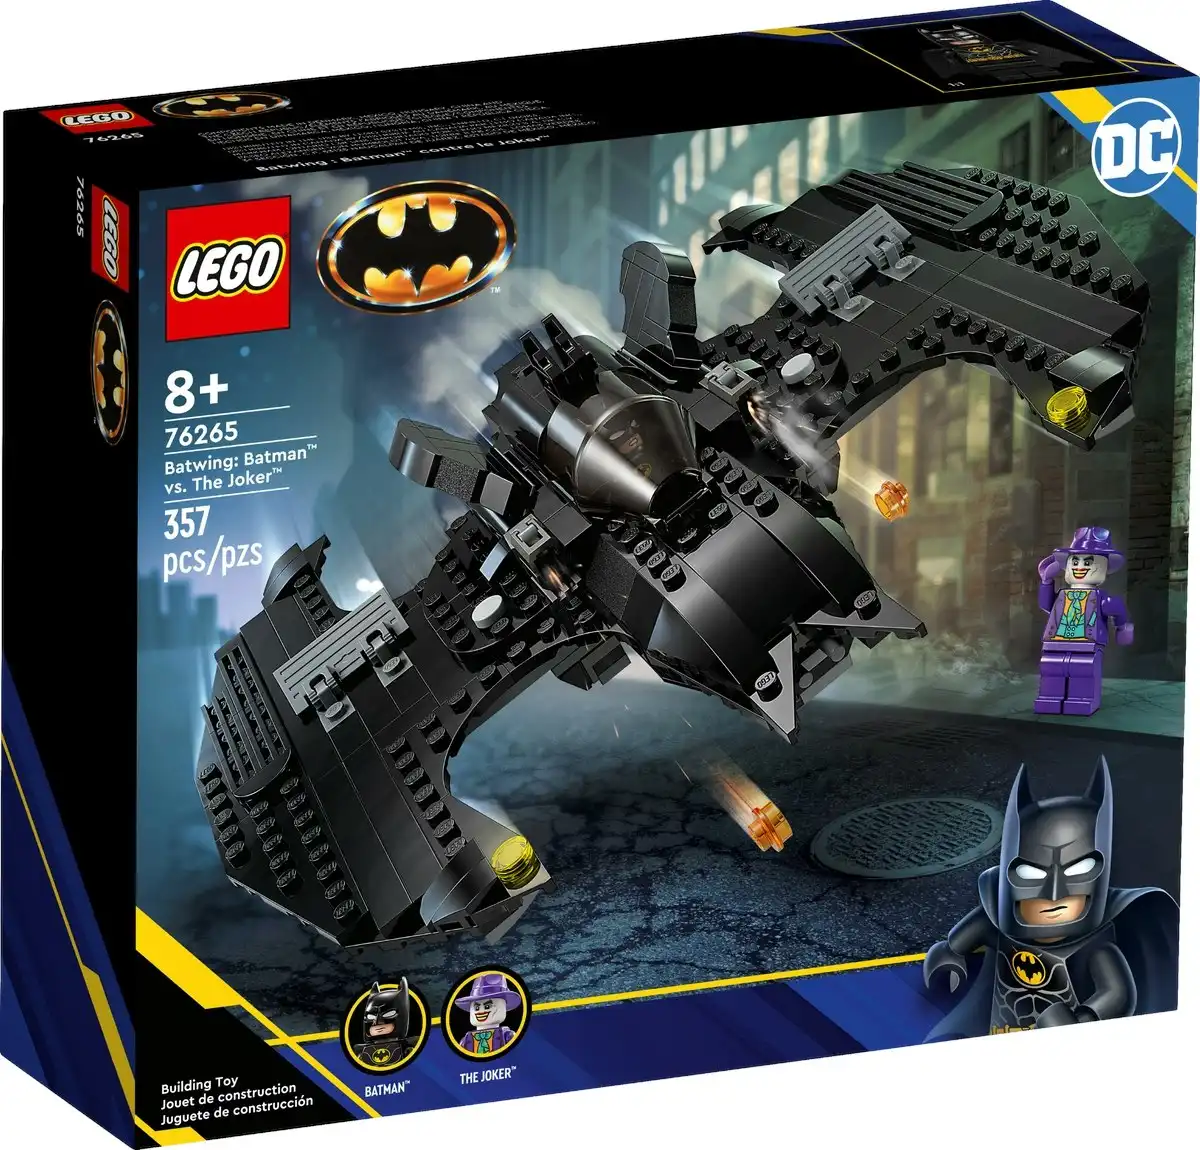 LEGO 76265 Batwing: Batman™ vs. The Joker™ - DC Super Heroes